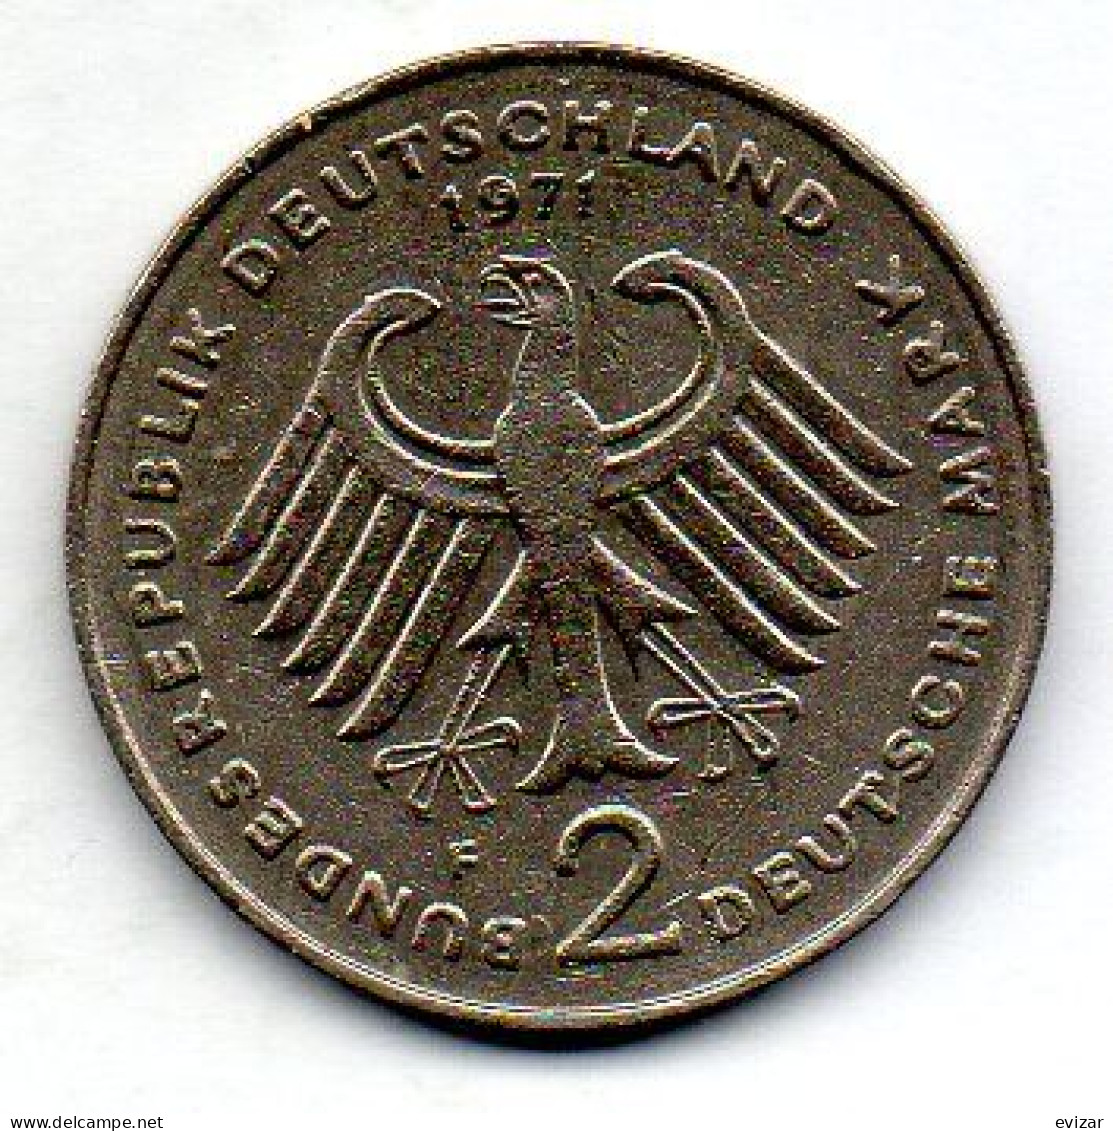 GERMANY - FEDERAL REPUBLIC, 2 Mark, Copper-Nickel, Year 1971-F, KM # 127 - 2 Mark